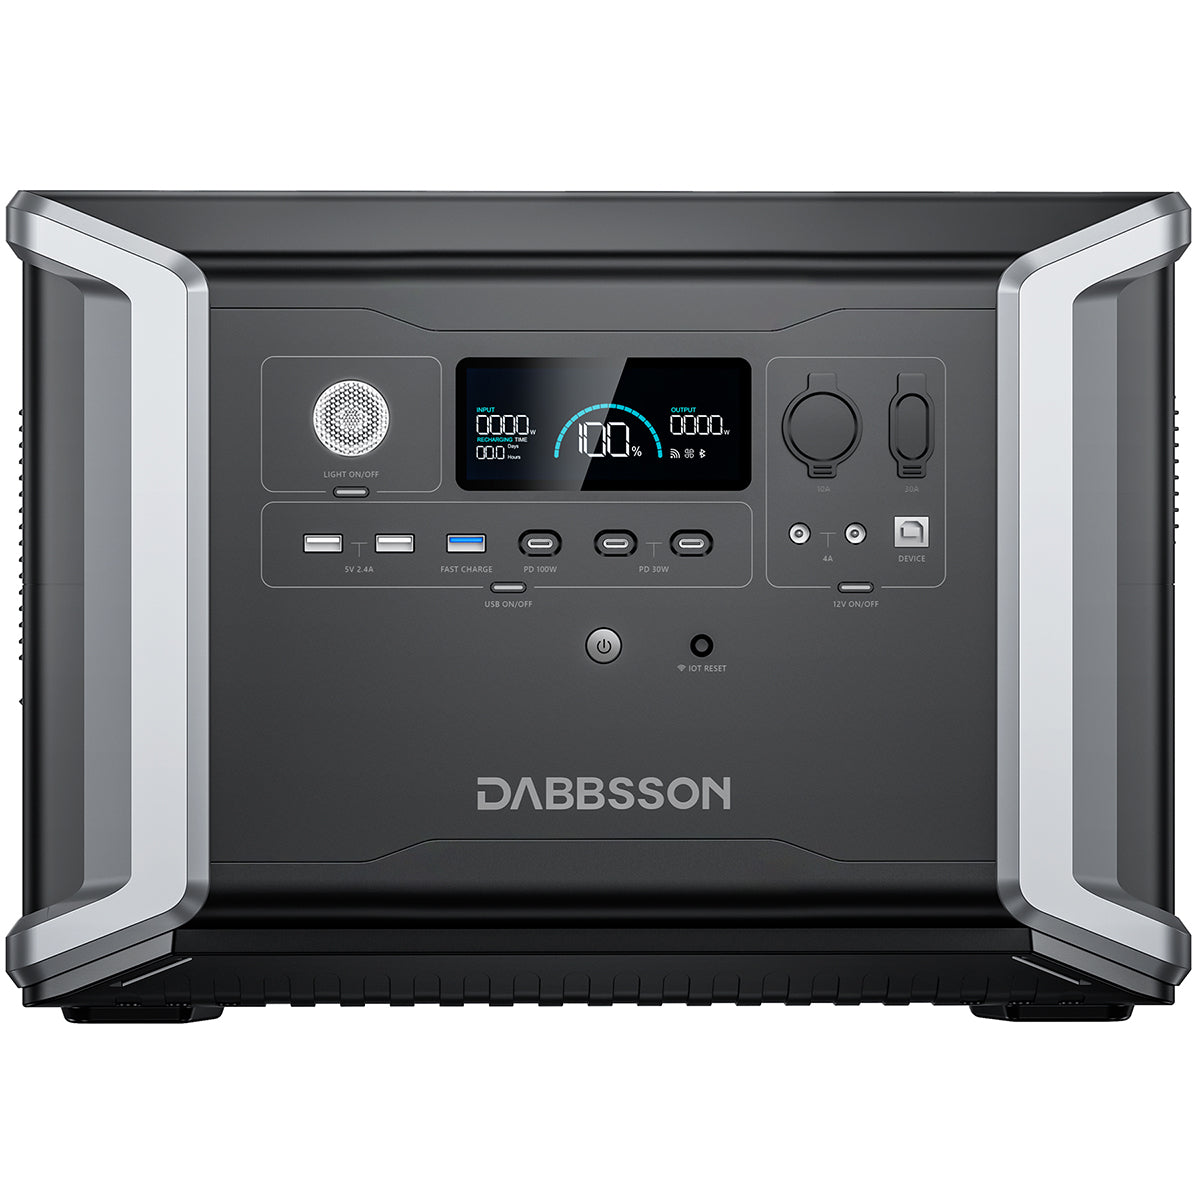 Dabbsson DBS2300